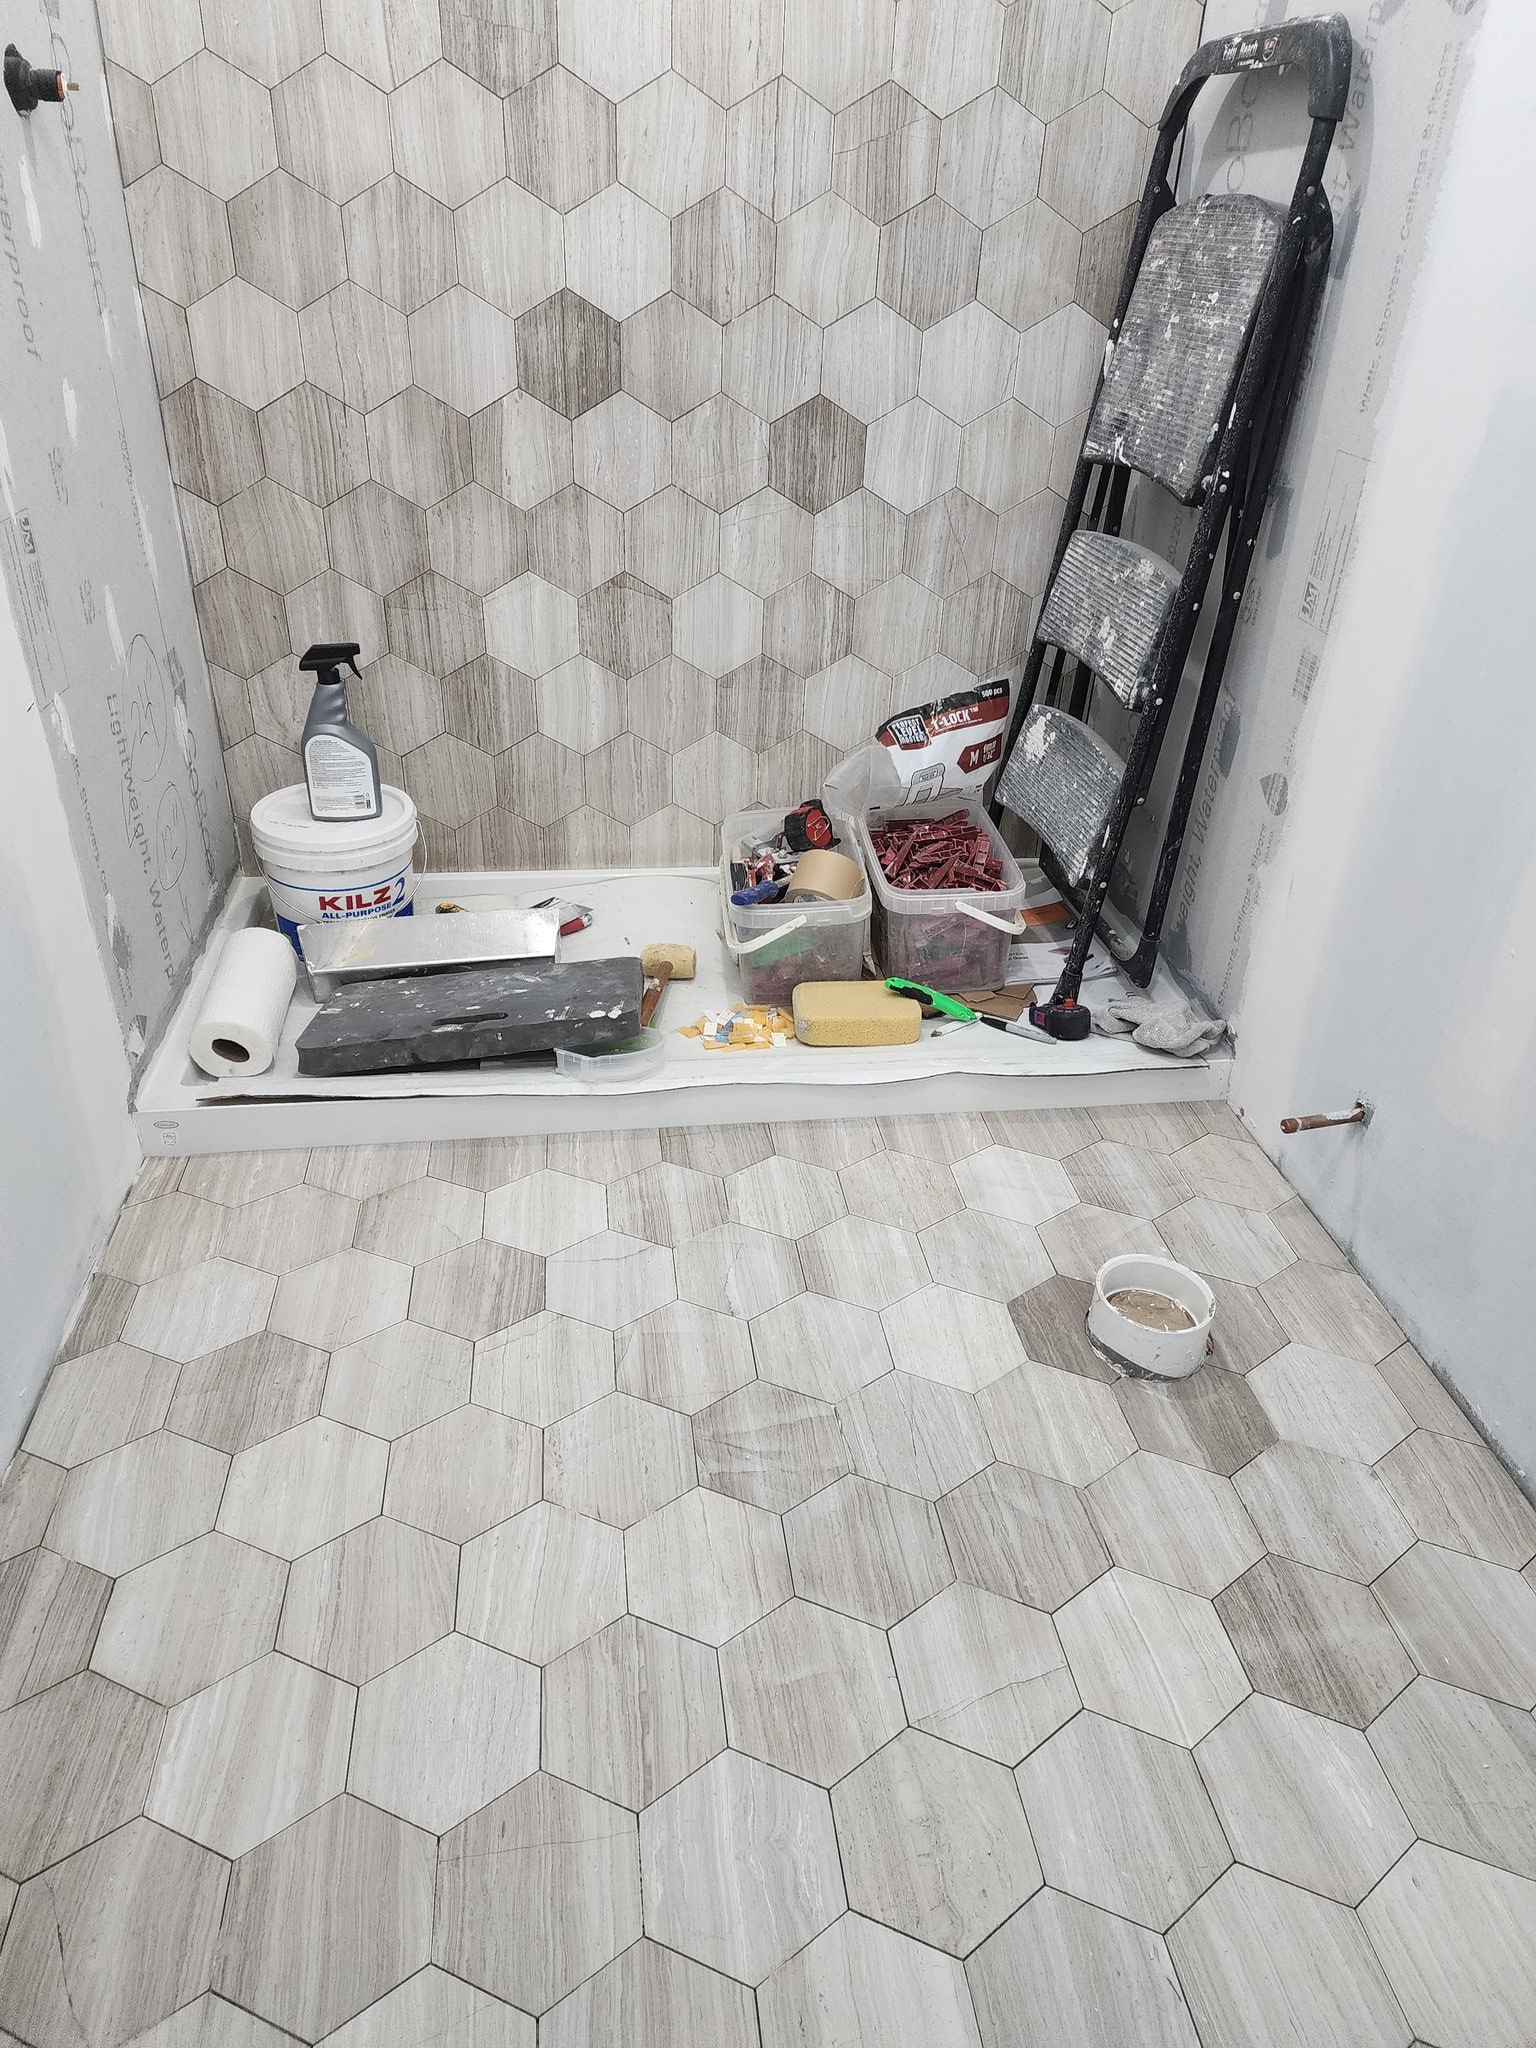 GoShelf: The Shower Ceramic Corner Shelf for Easy Install